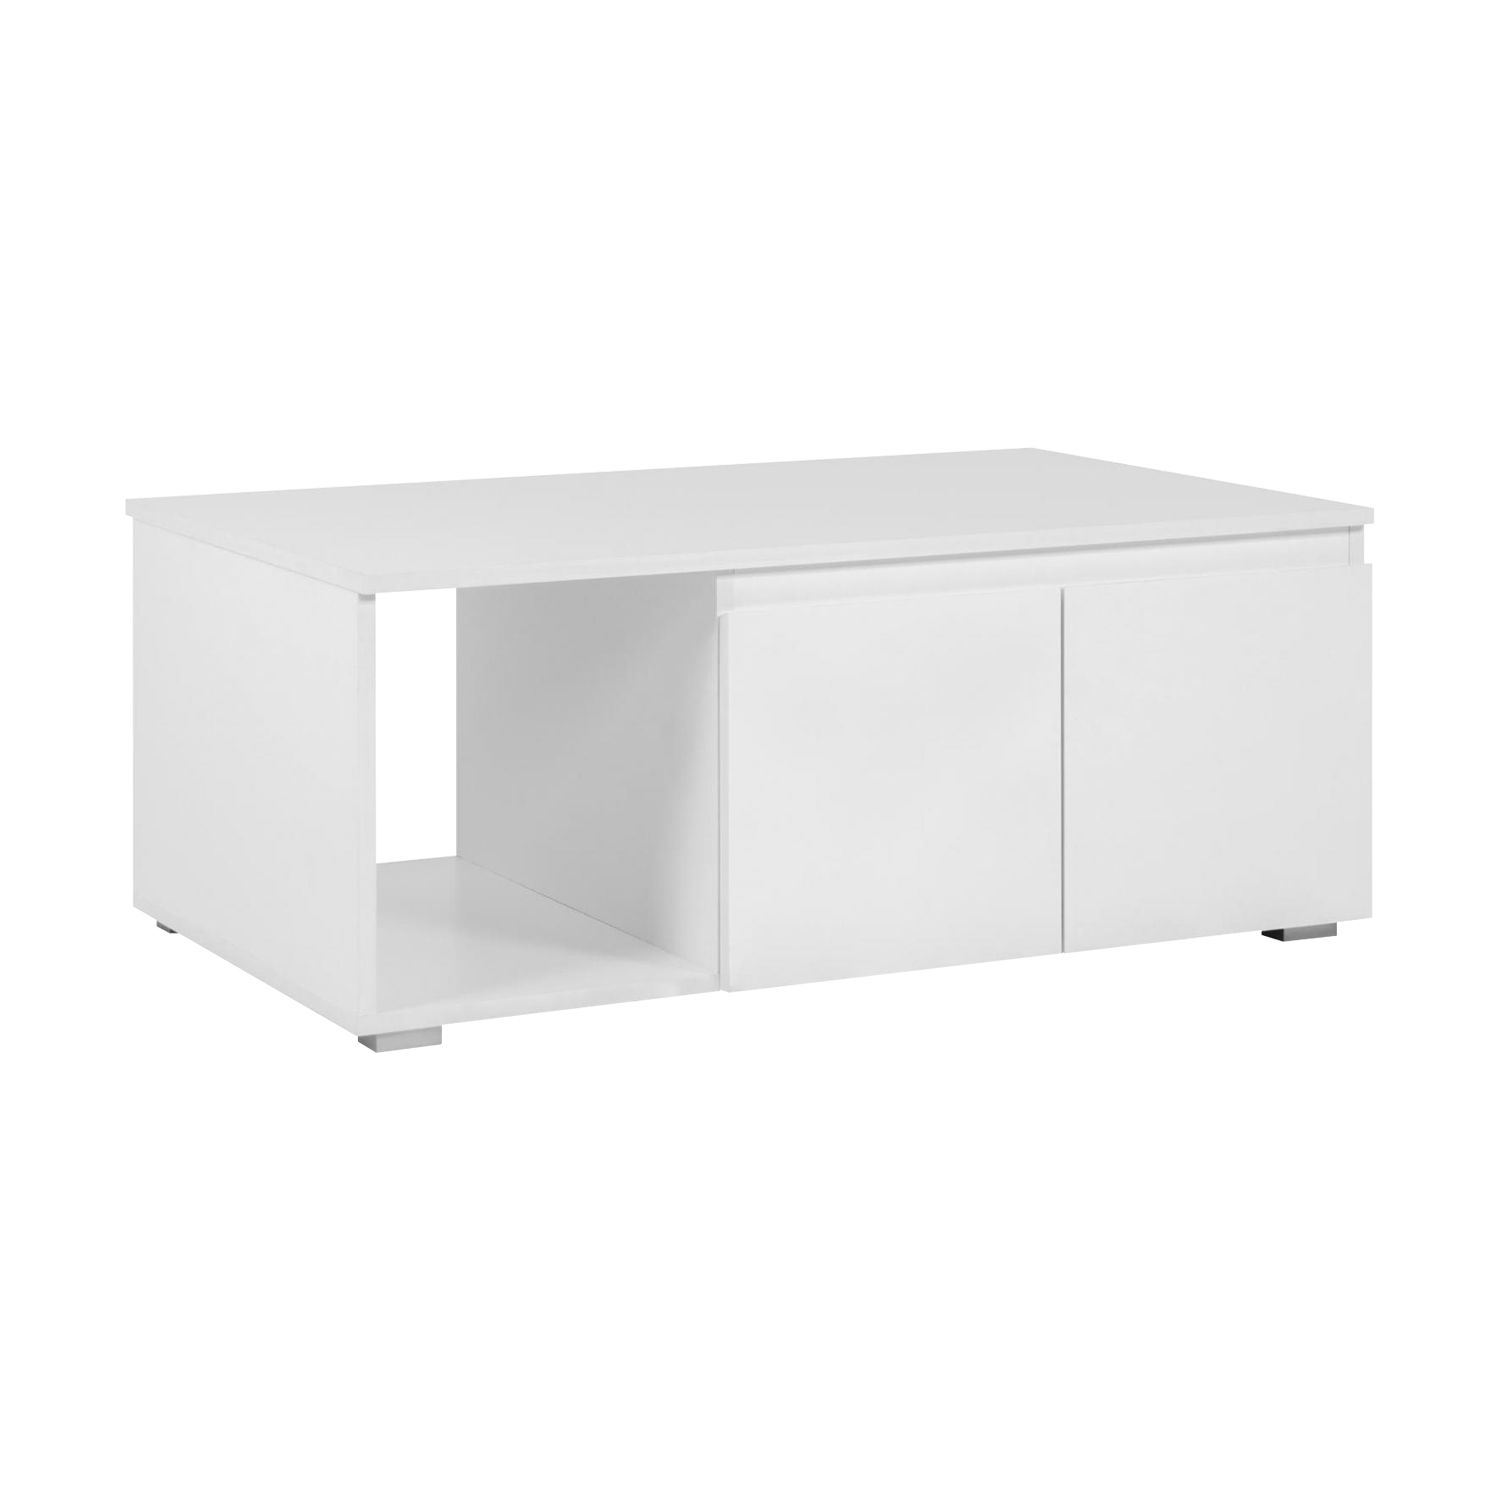 Konferenční stolek IMAGE 55A bílý - IDEA nábytek